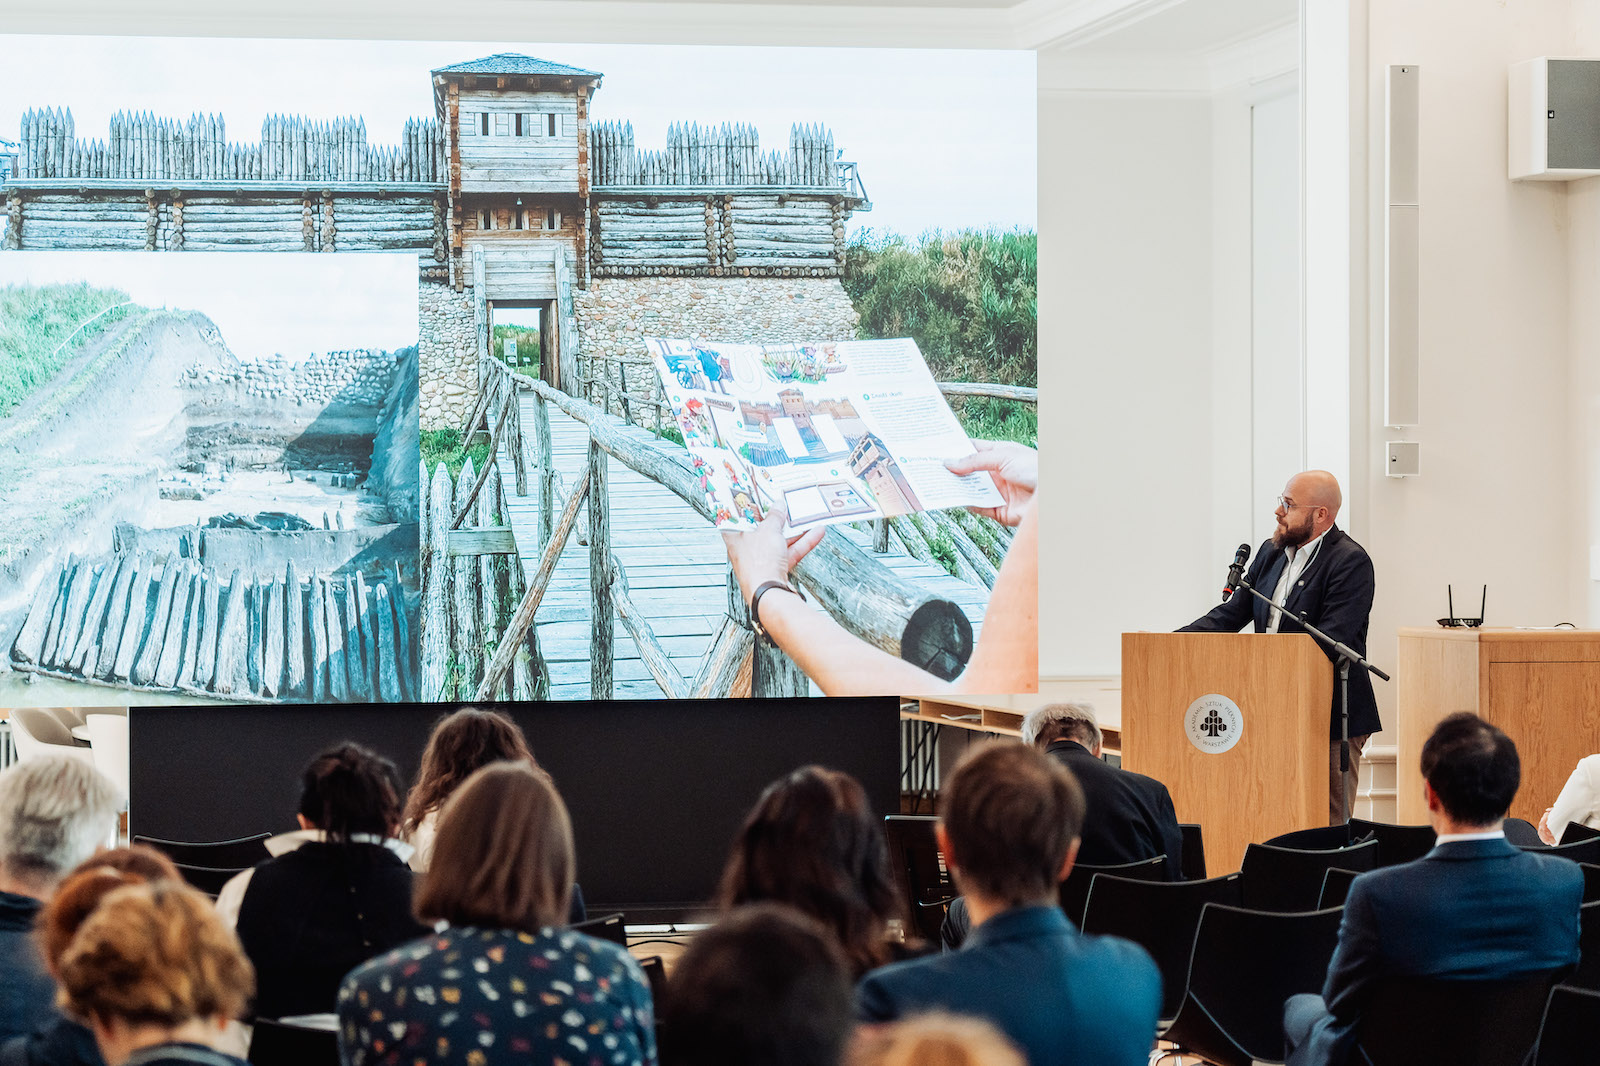 Dominik Kacper Płaza prowadzi prelekcję podczas konferencji Odbudować nieodbudowane. Obok niego ekran ze zdjęciem rekonstrukcji grodziska w Tumie.